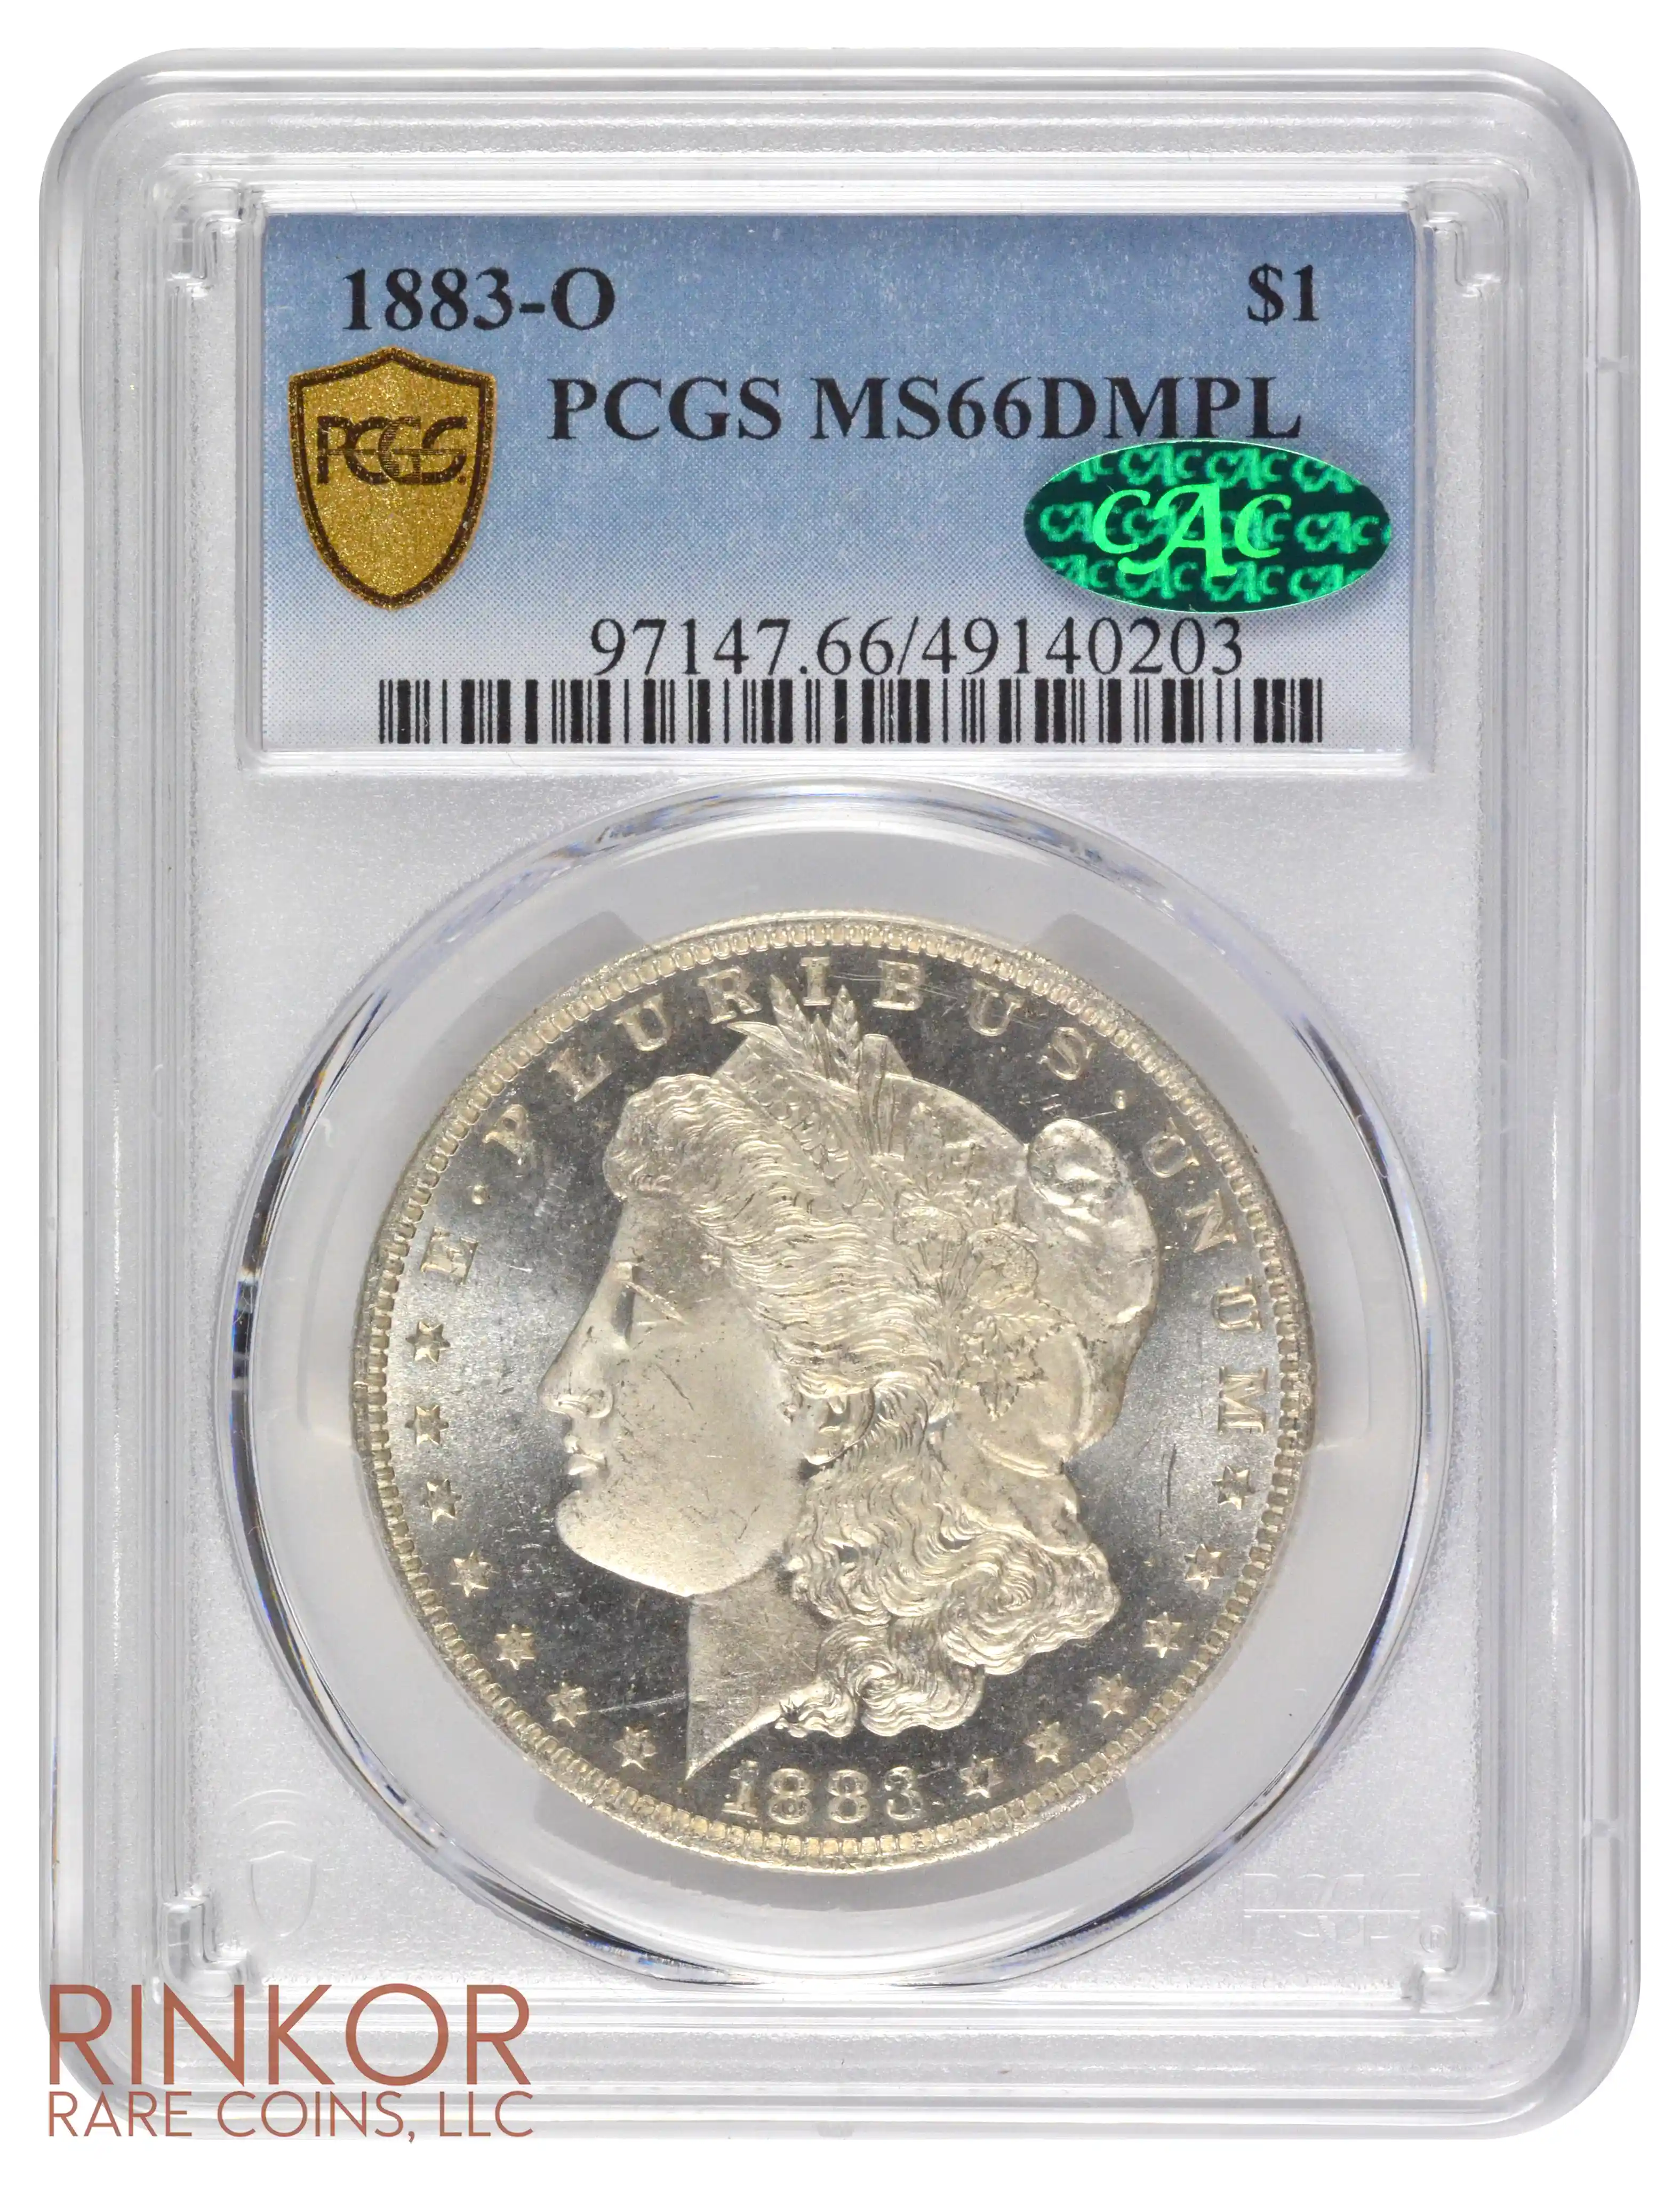 1883-O $1 PCGS MS 66 DMPL CAC